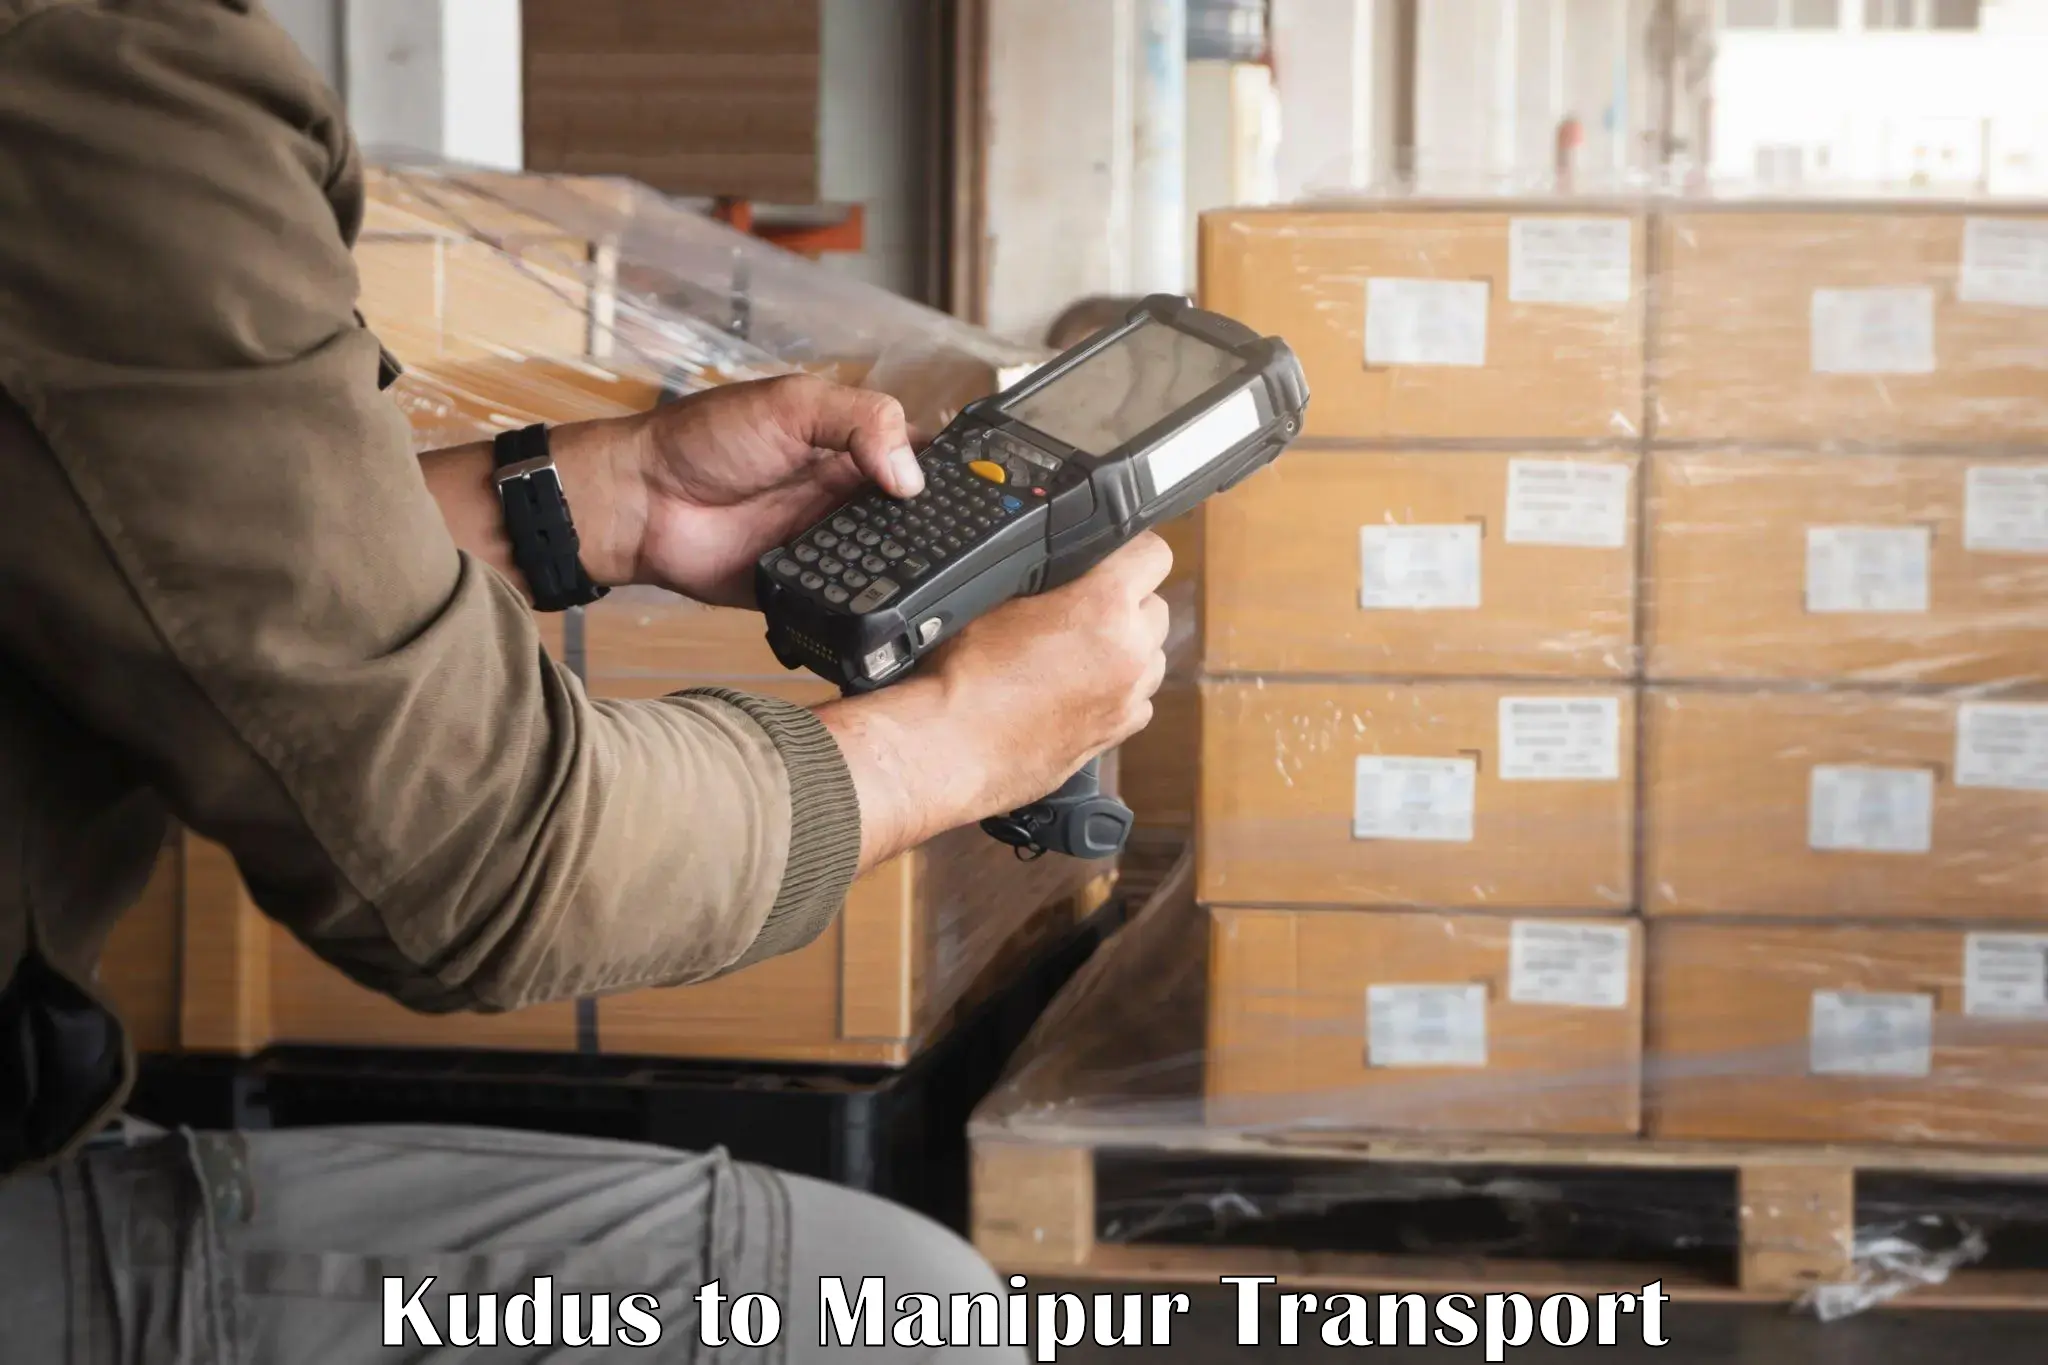 Furniture transport service Kudus to Manipur